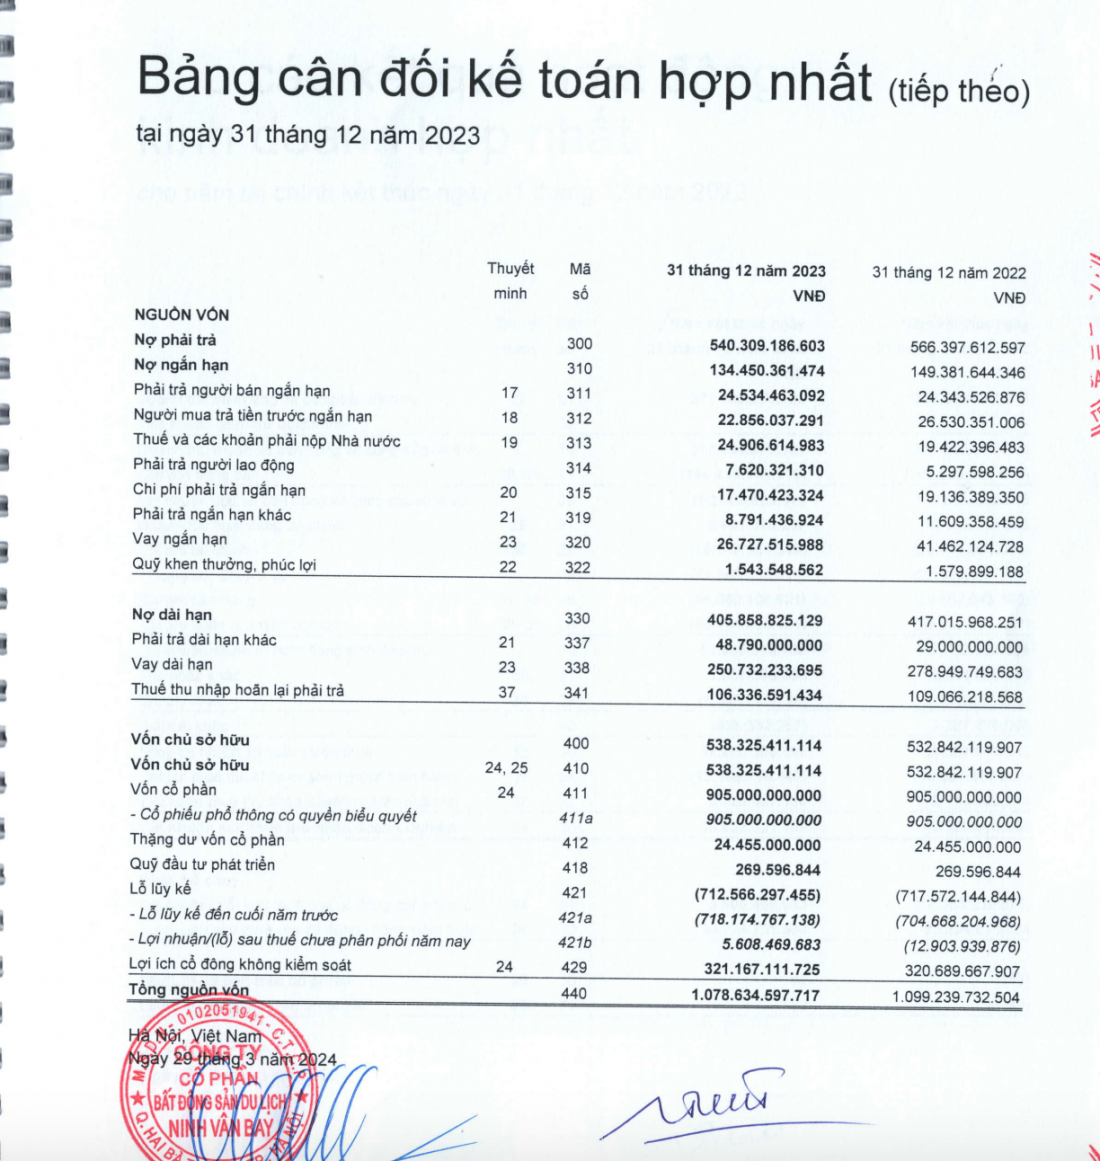 Hoa hậu Ngọc Hân nhận lương 1,4 tỷ đồng tại doanh nghiệp đang điều hành, Ninh Vân Bay  lỗ lũy kế 712 tỷ